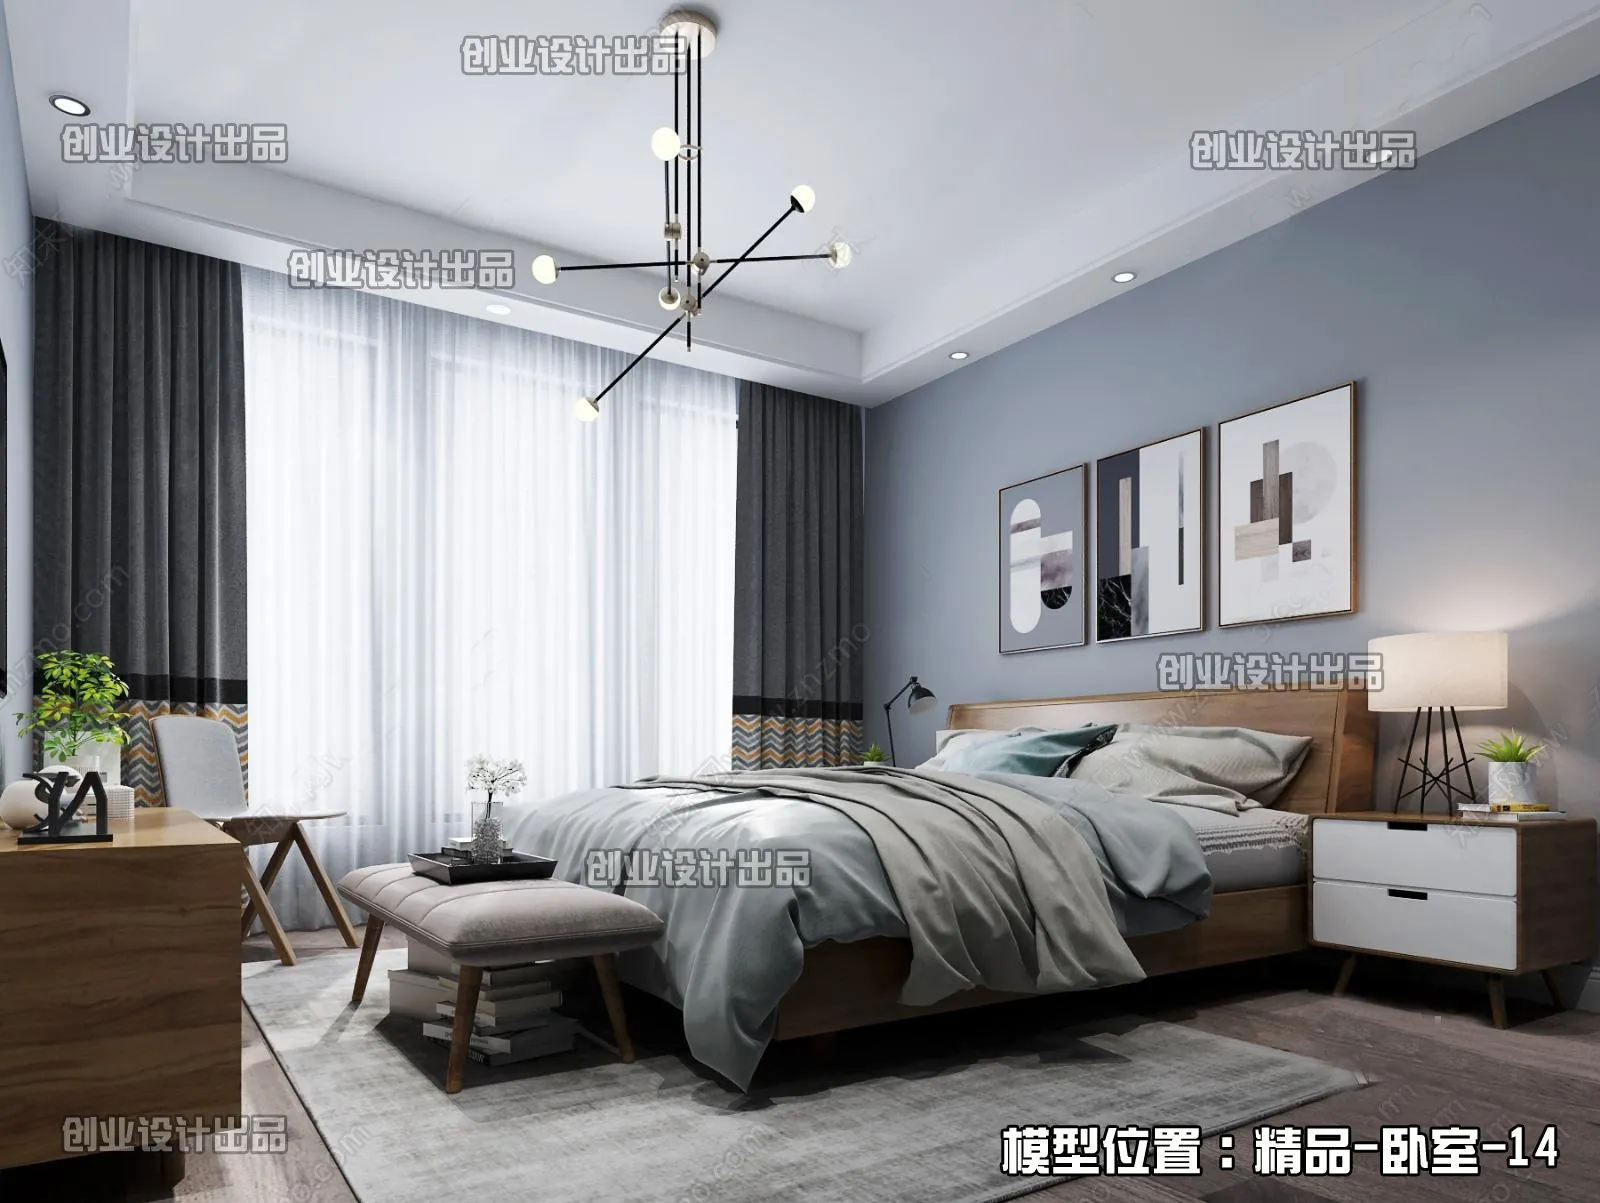 Bedroom – Scandinavian architecture – 052